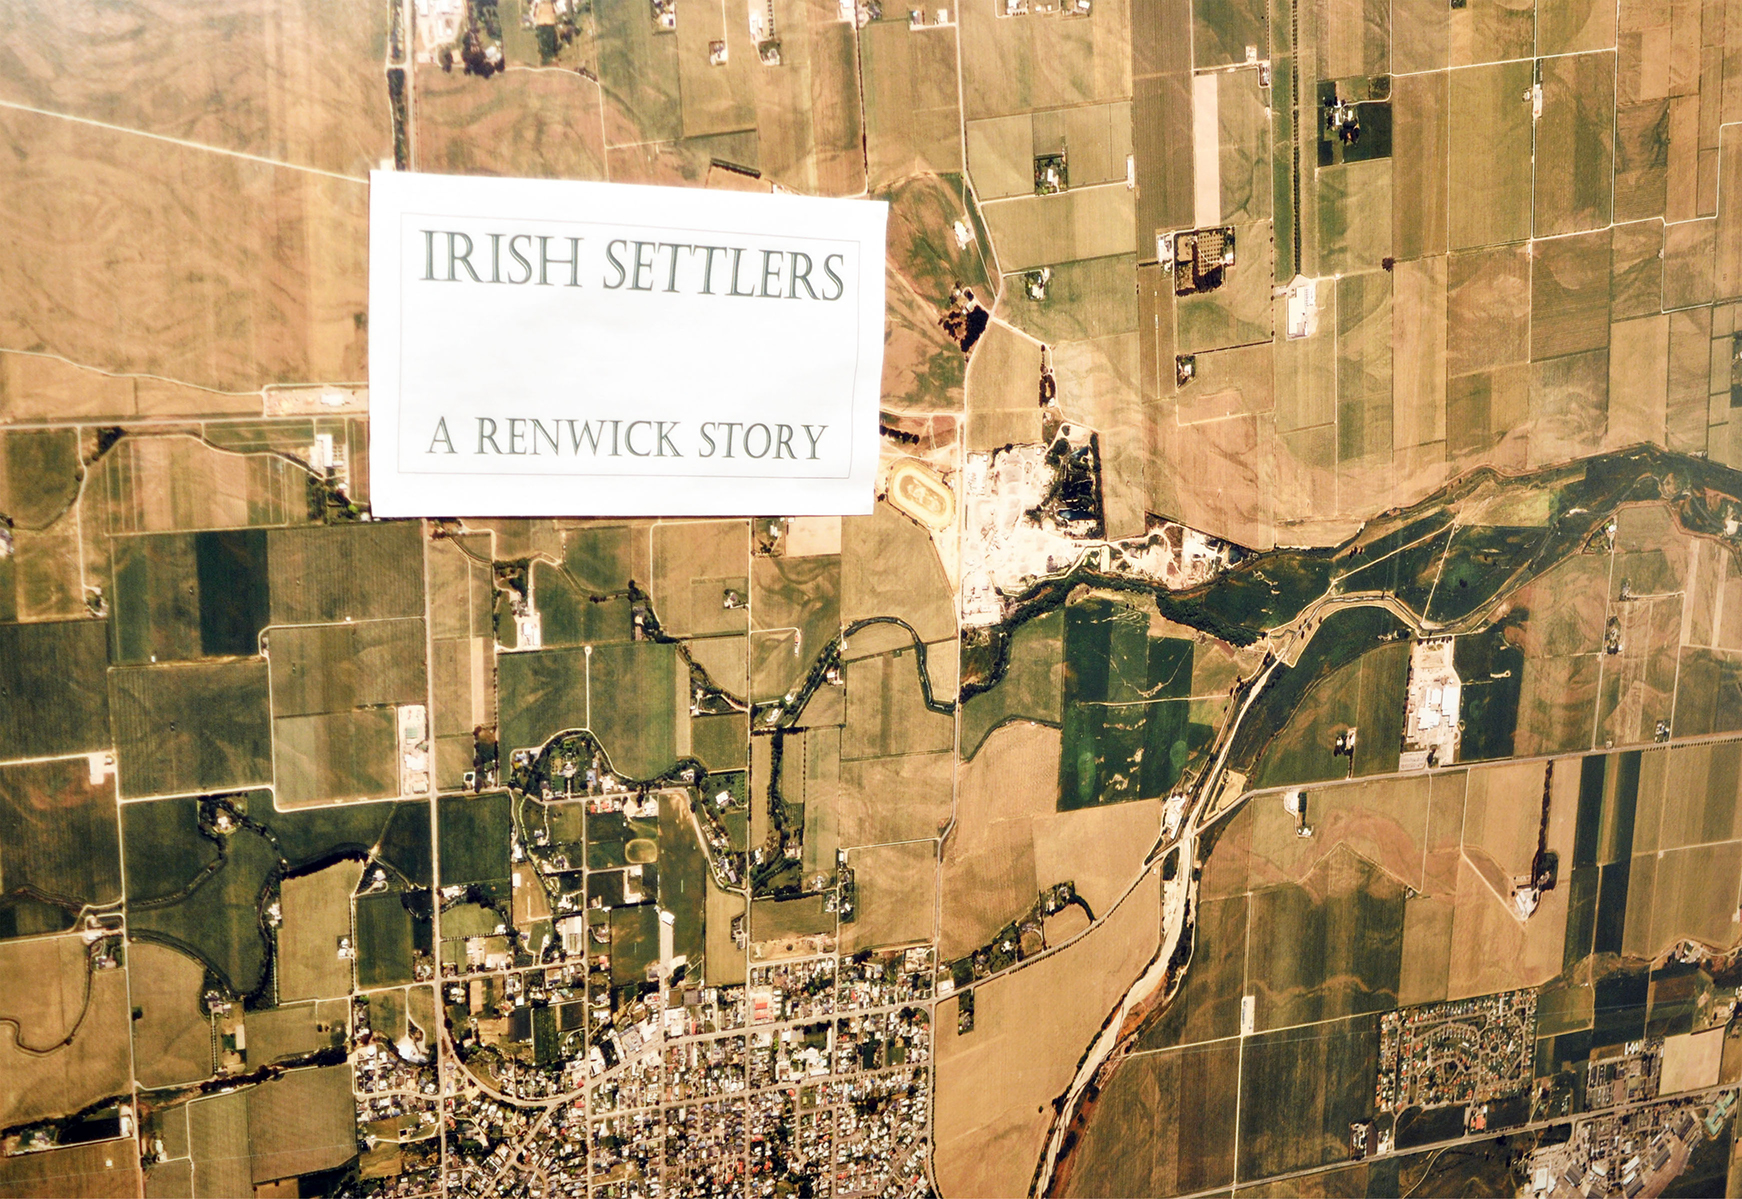 Irish Settlers: A Renwick story